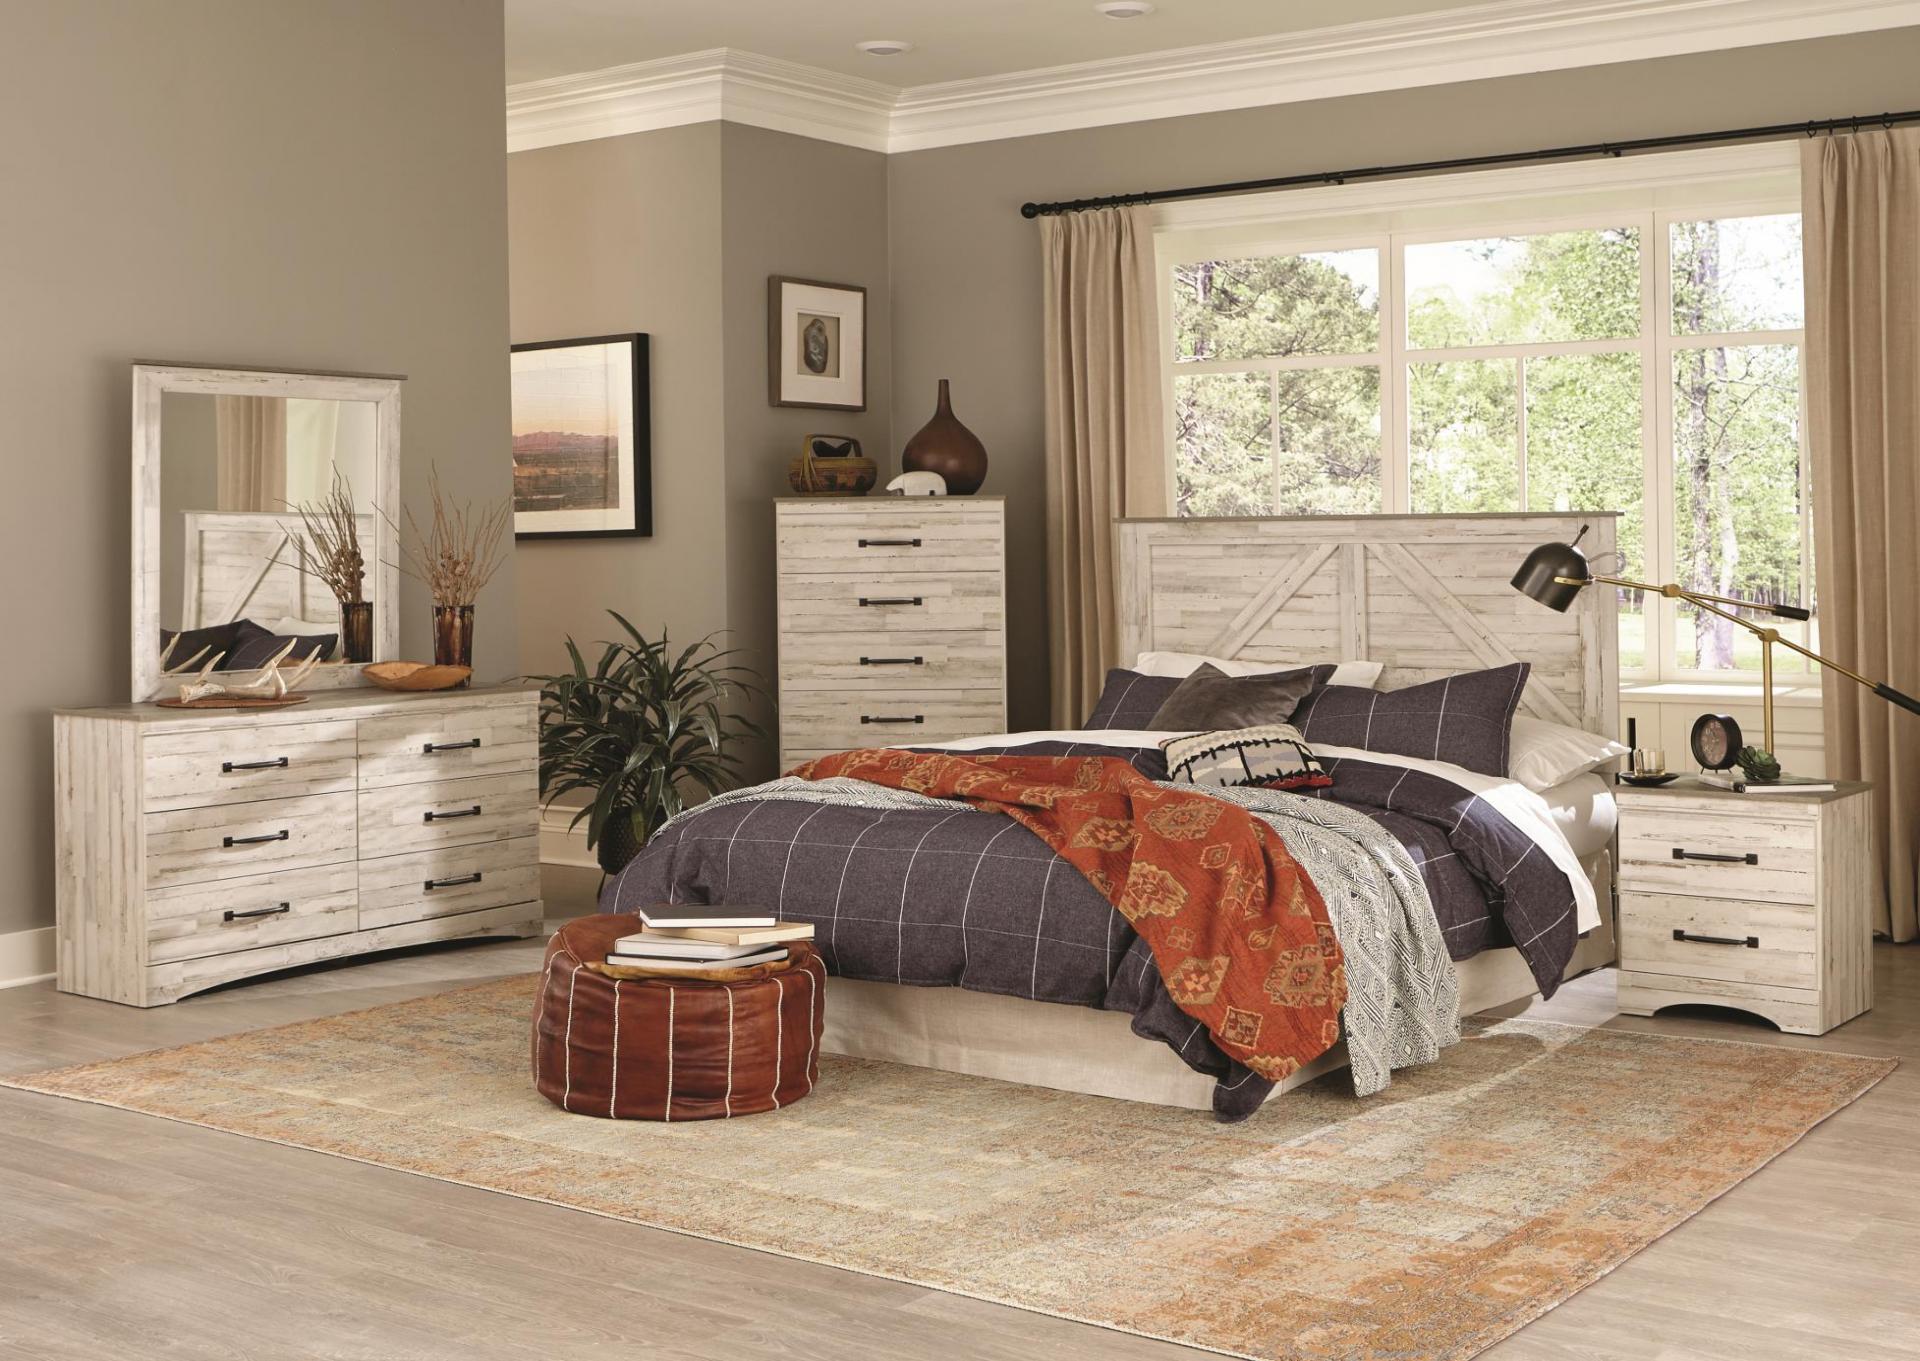 aspen leaf bedroom furniture